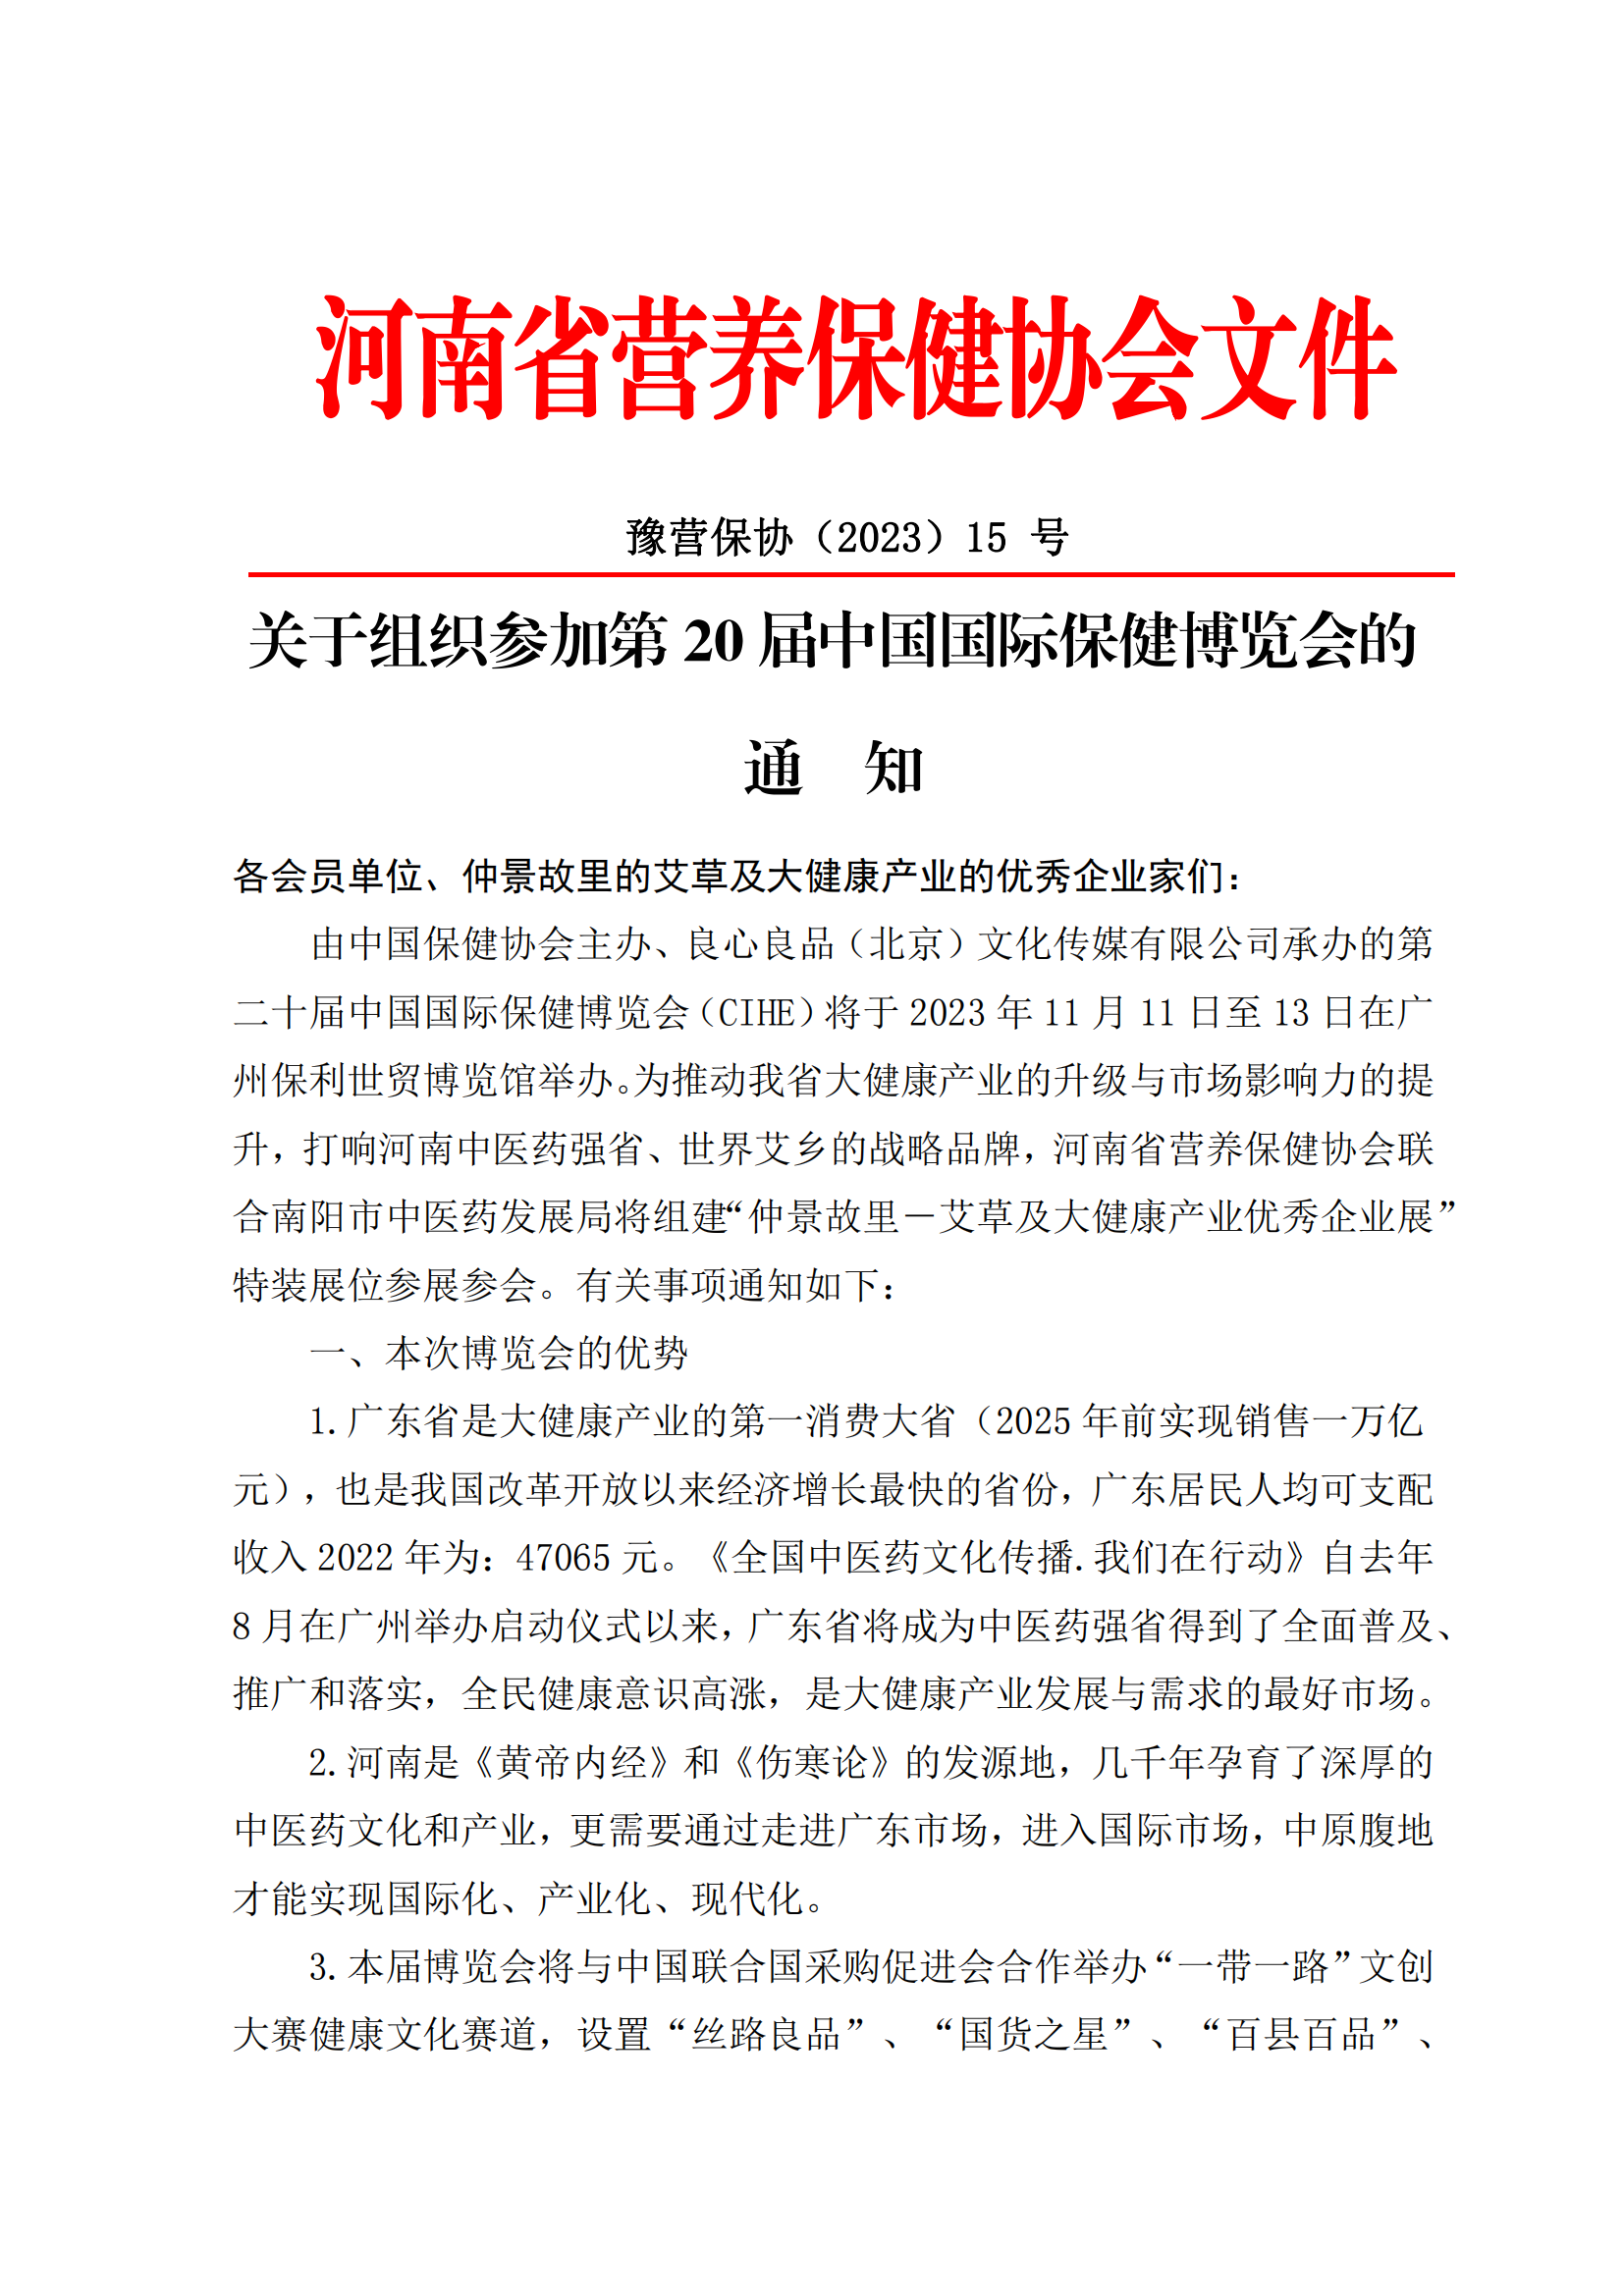 关于组织参加第20届中国国际保健博览会的通知_合并_00.png